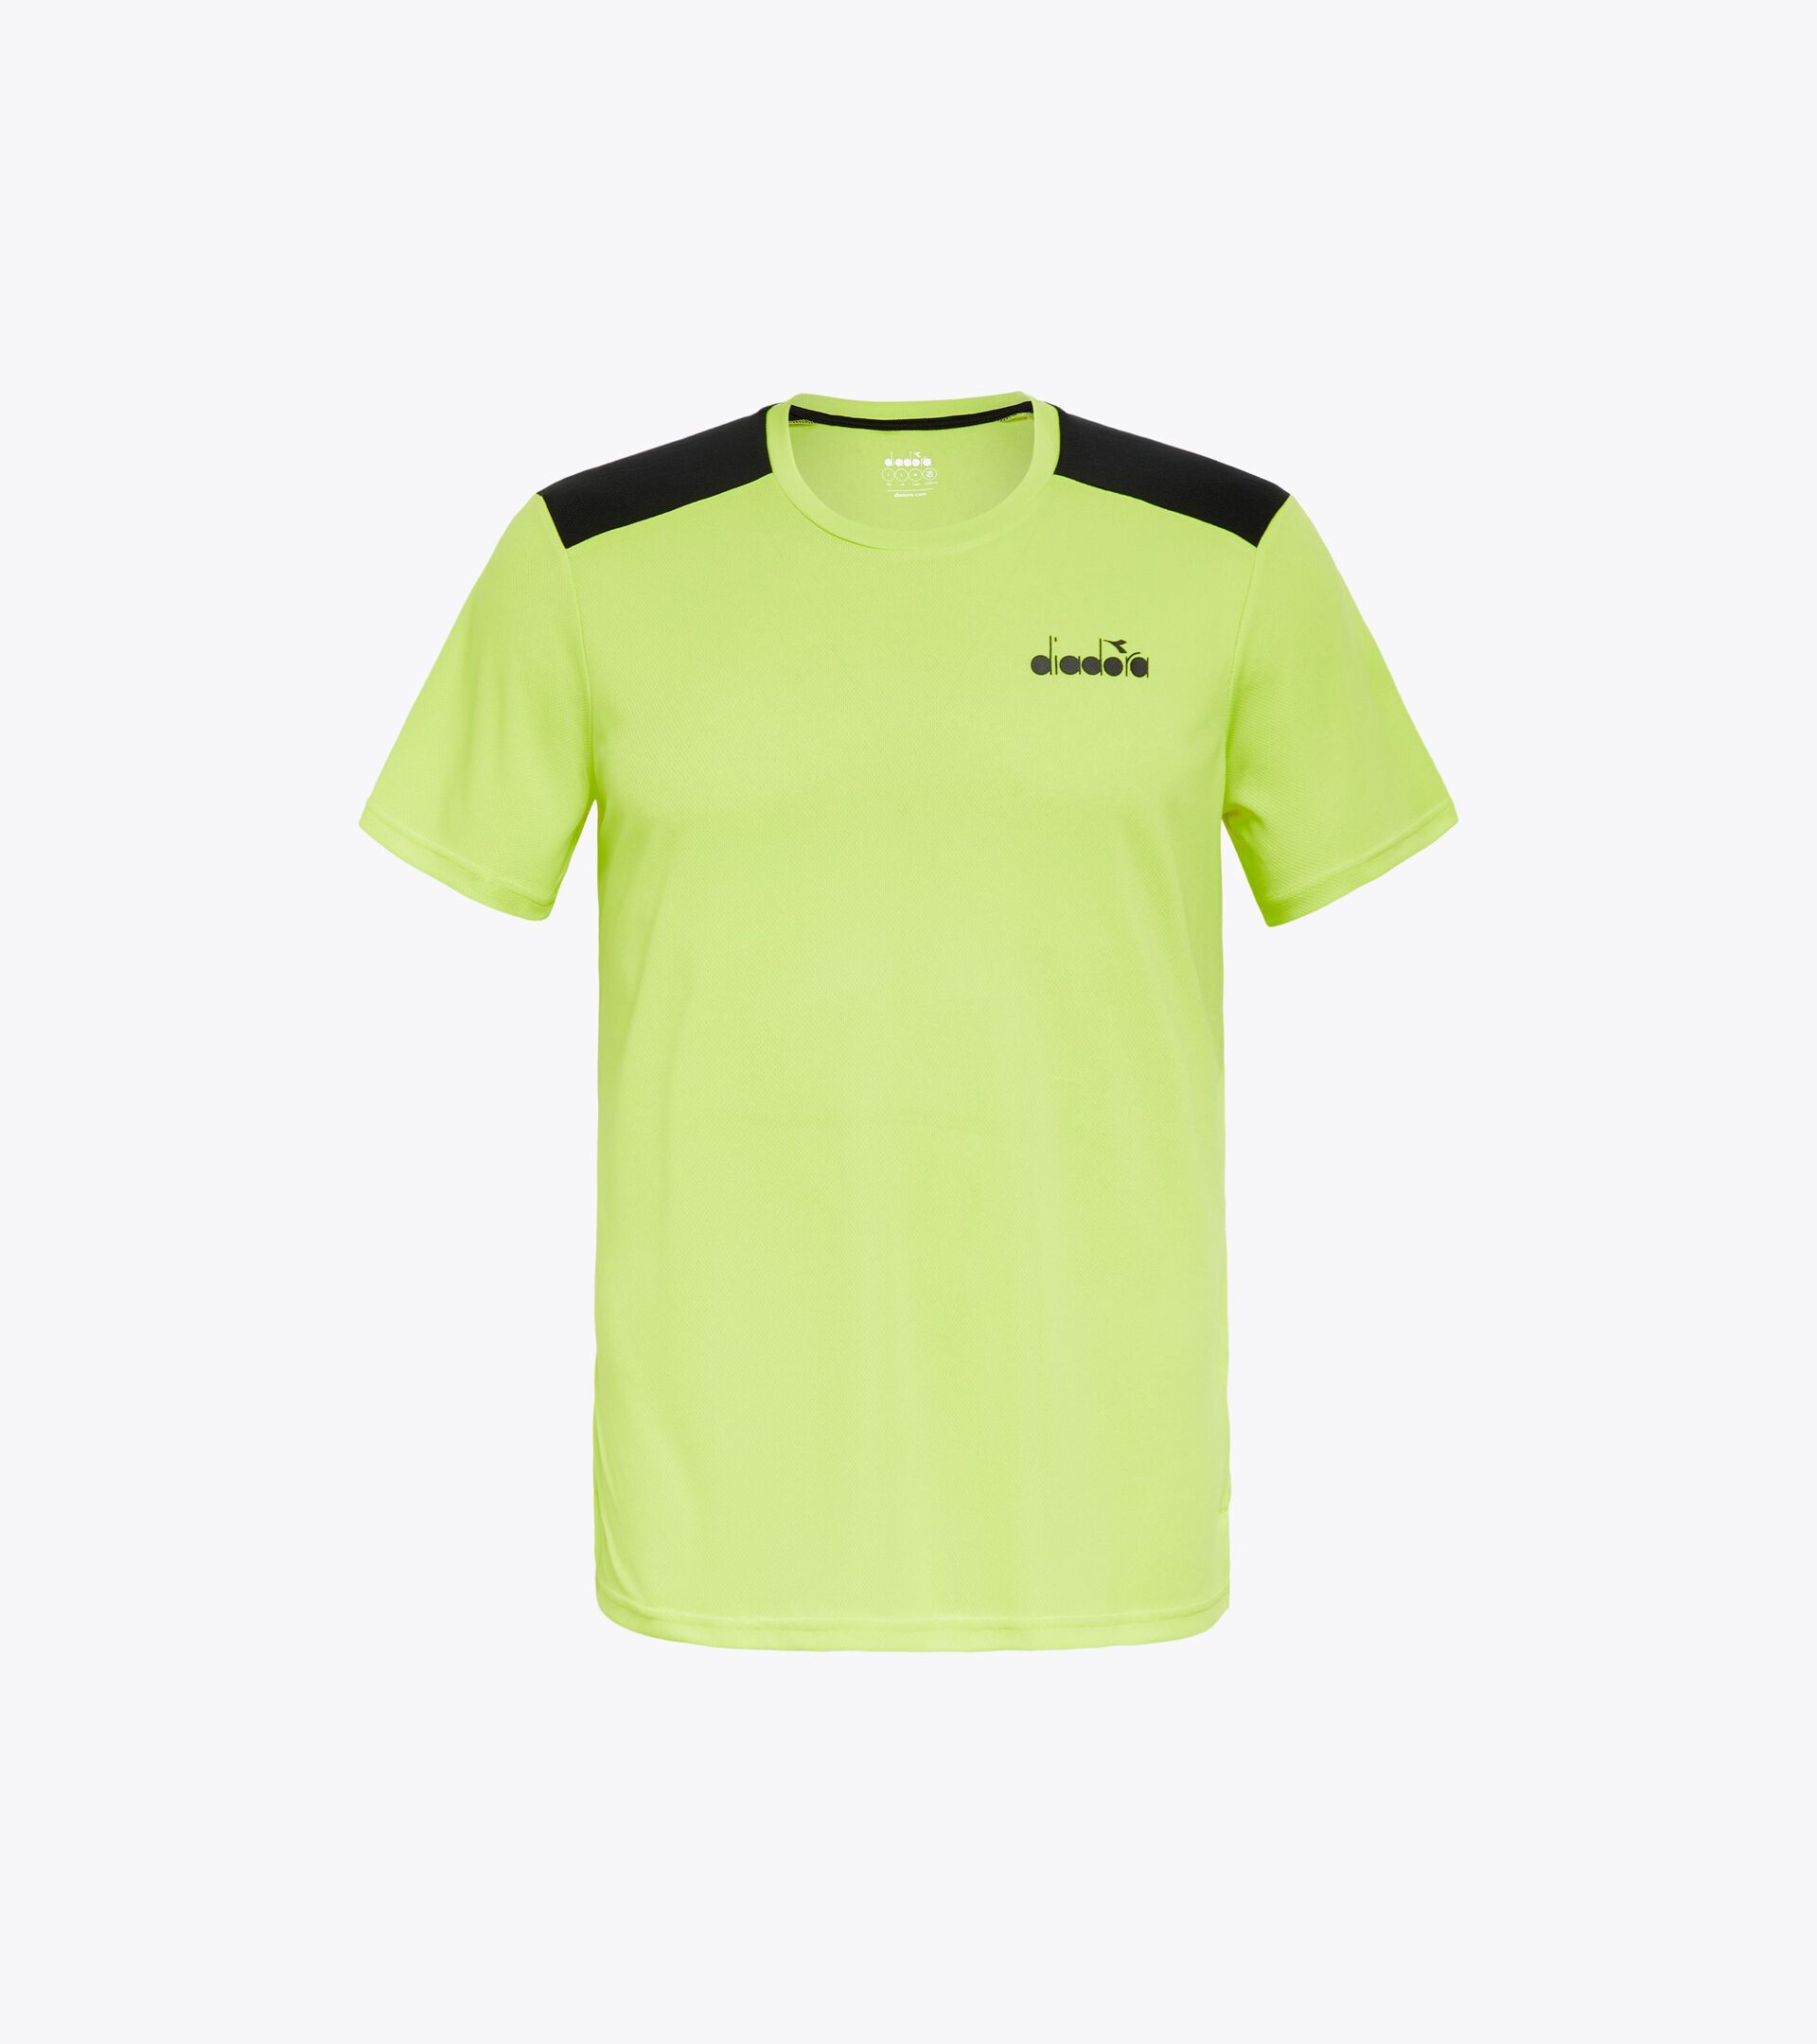 SS CORE T-SHIRT T Tennis shirt - Men - Diadora Online Store US